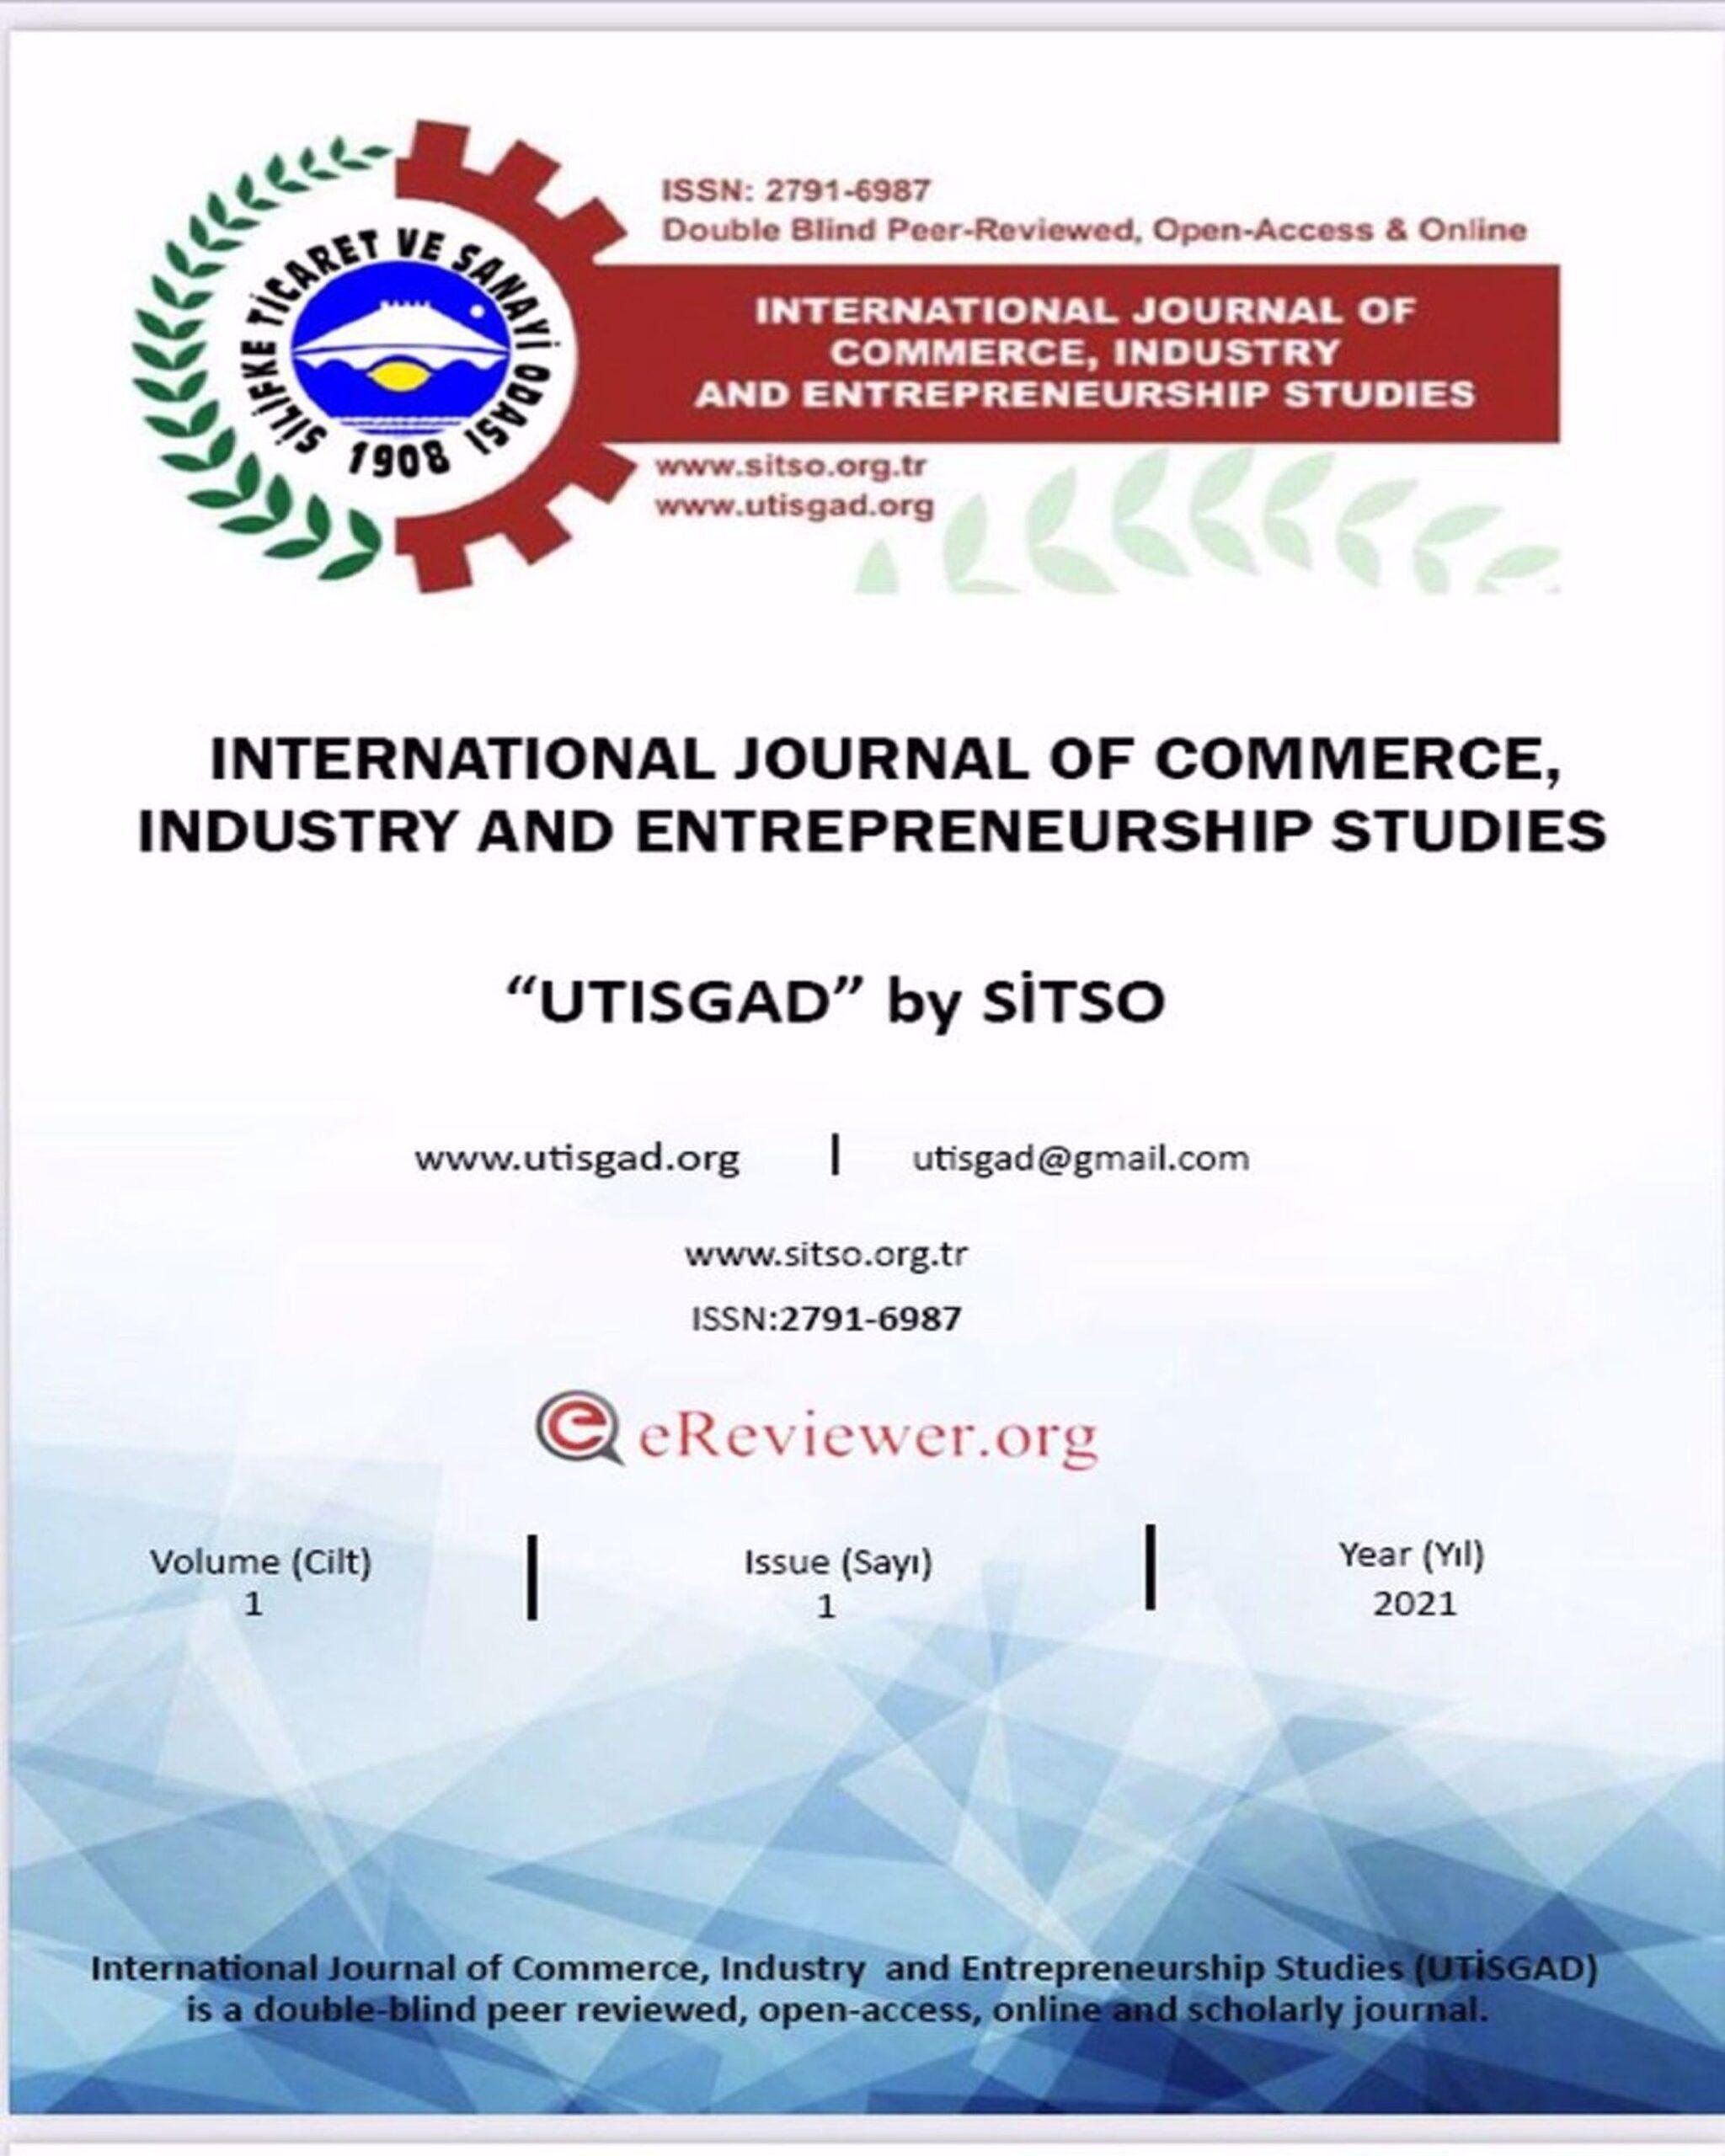 International Journal of Commerce, Industry and Entrepreneurship Studies